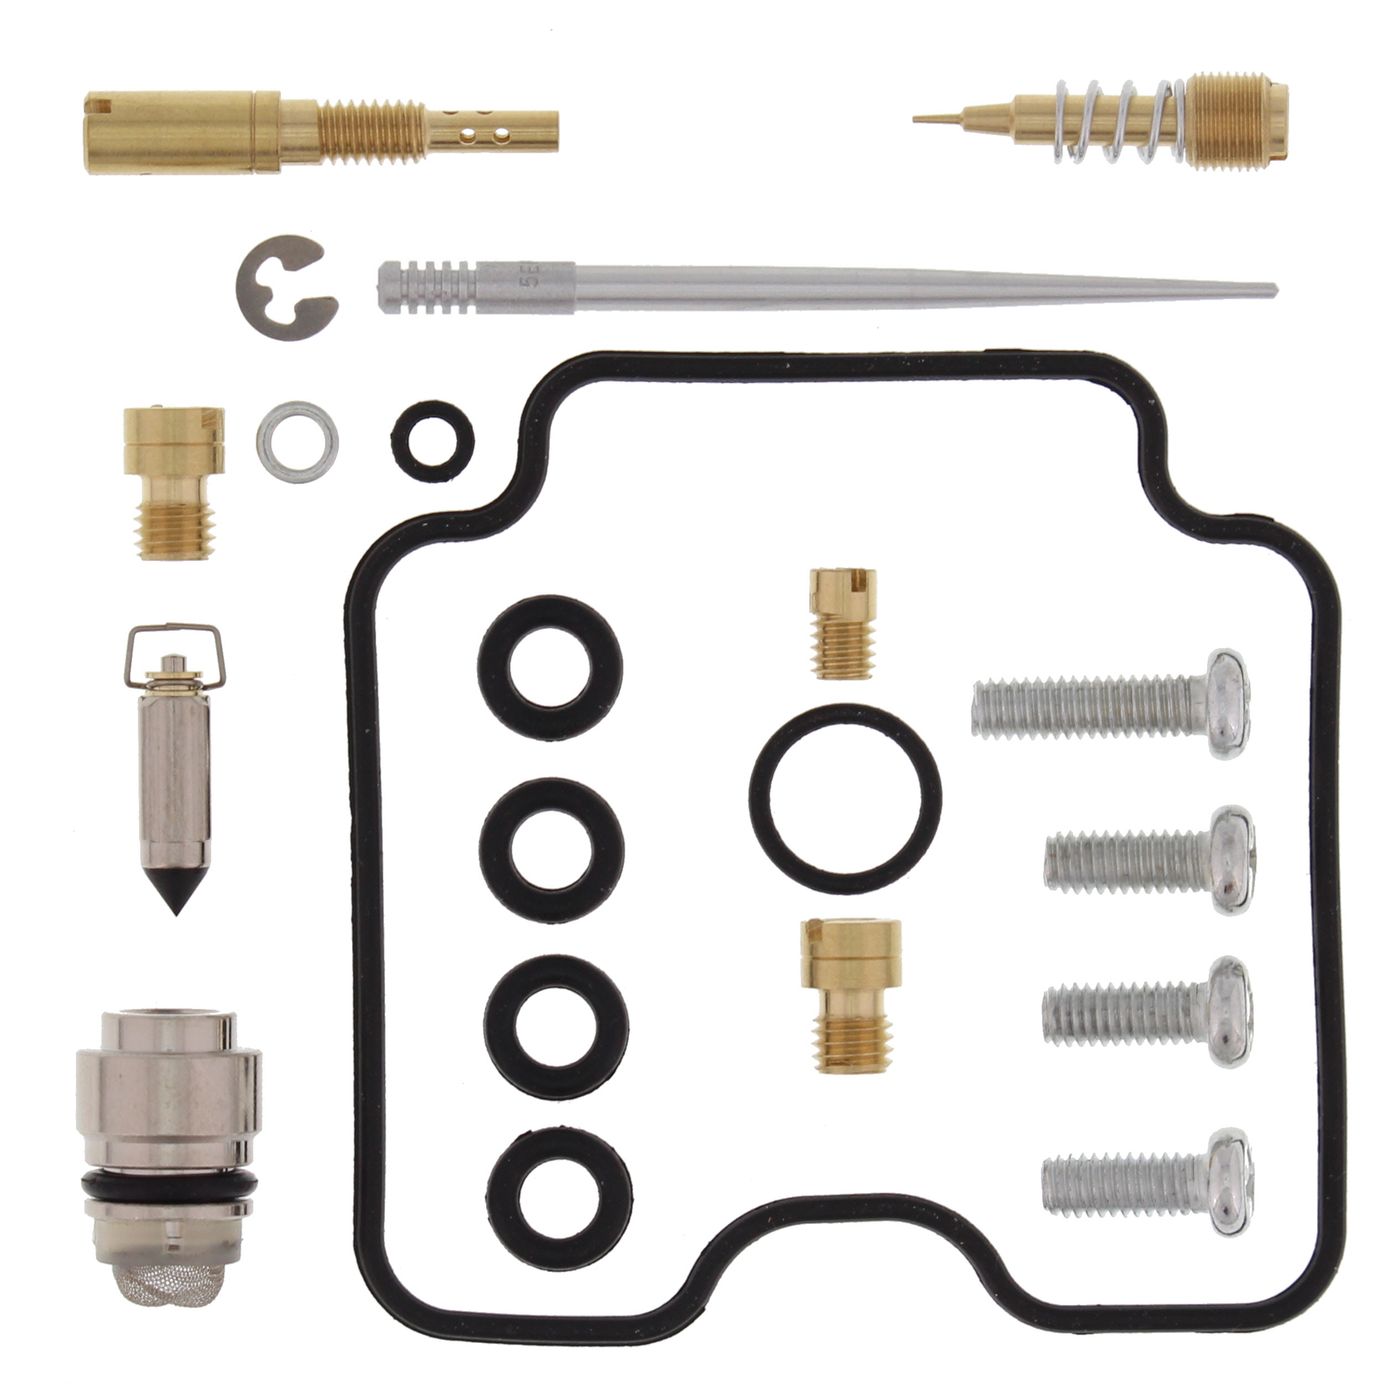 Wrp Carb Repair Kits - WRP261365 image